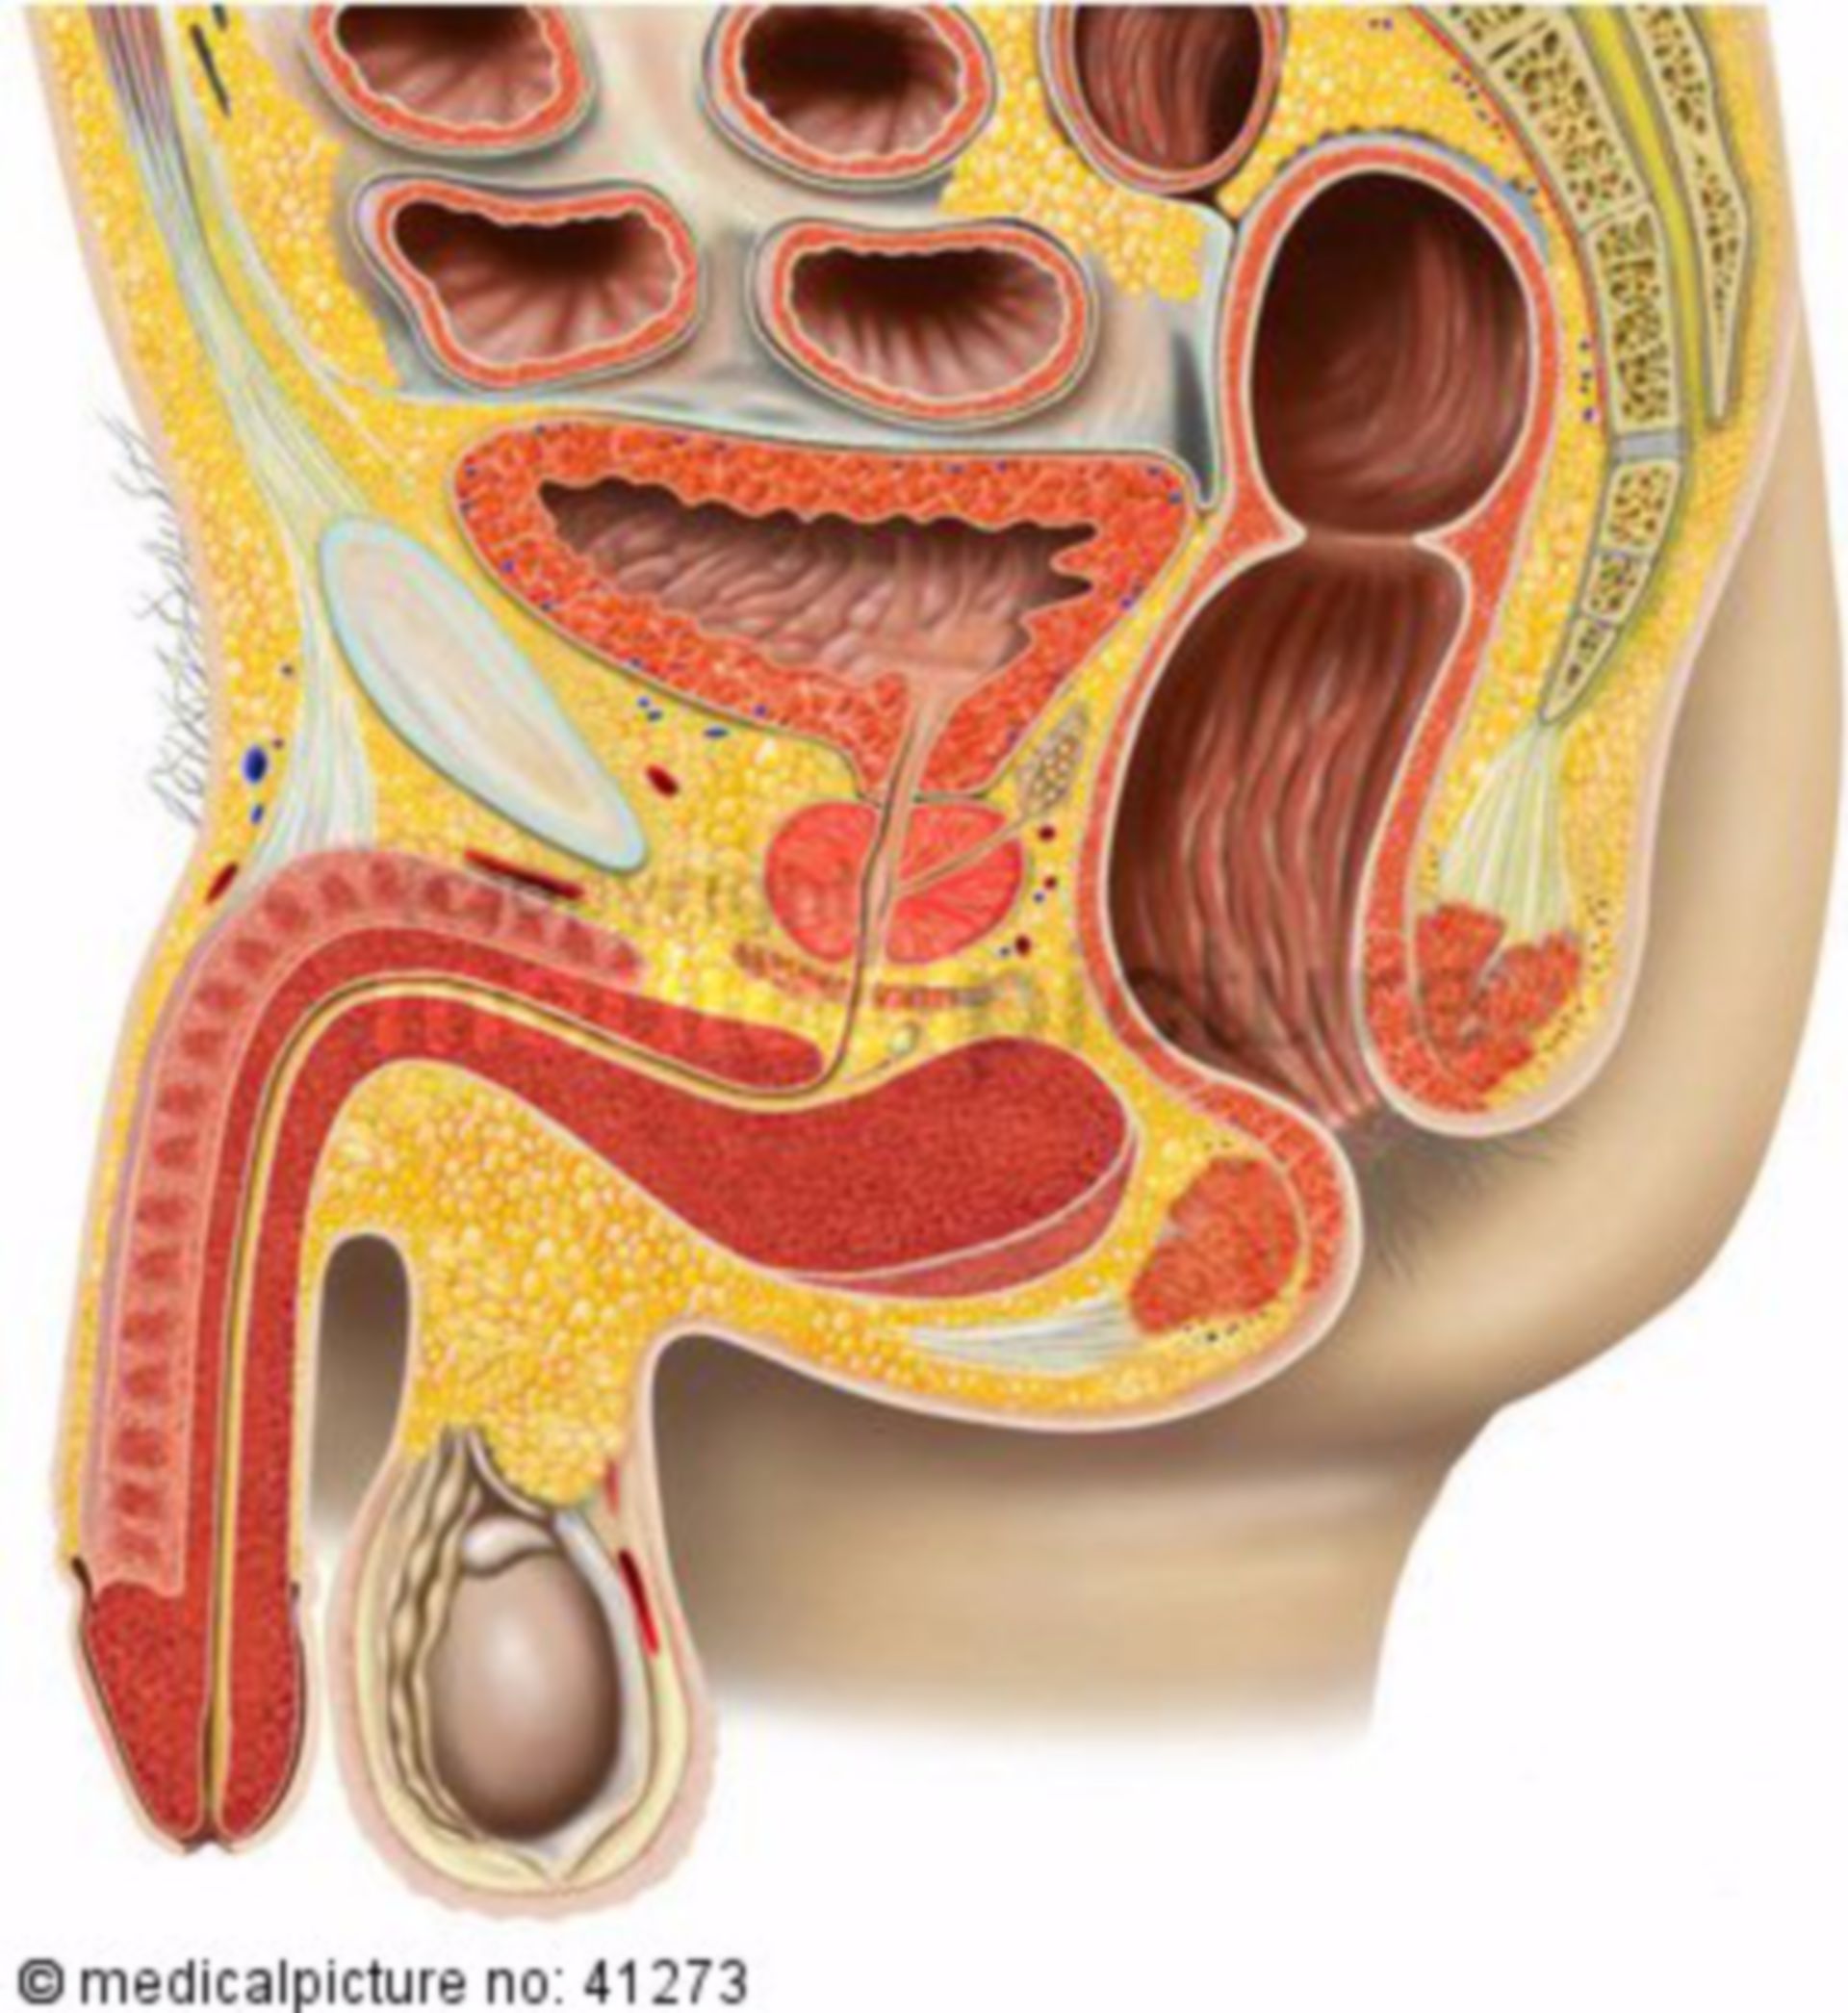 Pelvic organs